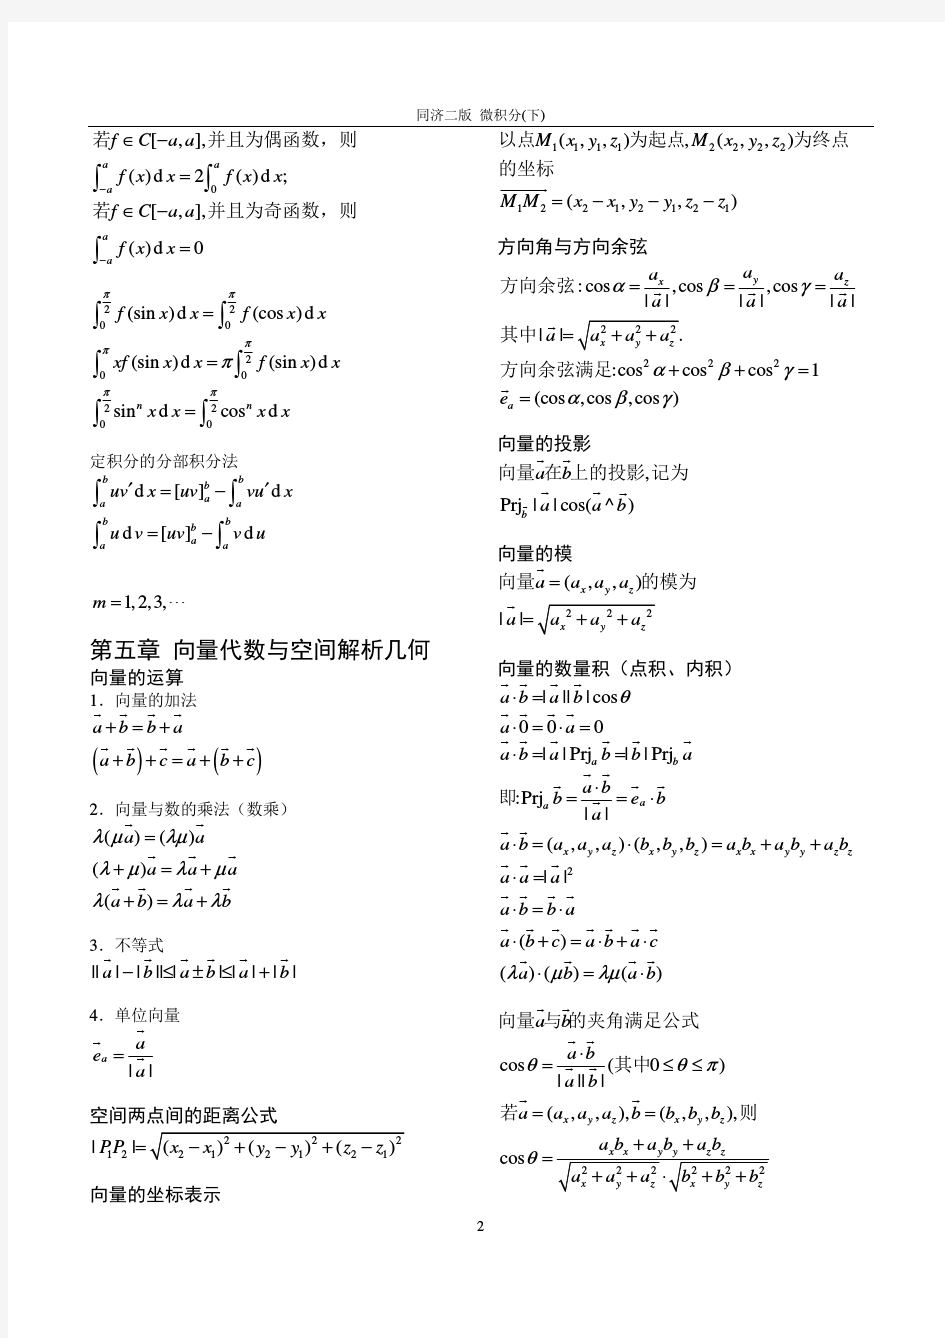 微积分常用公式及运算法则(下册)